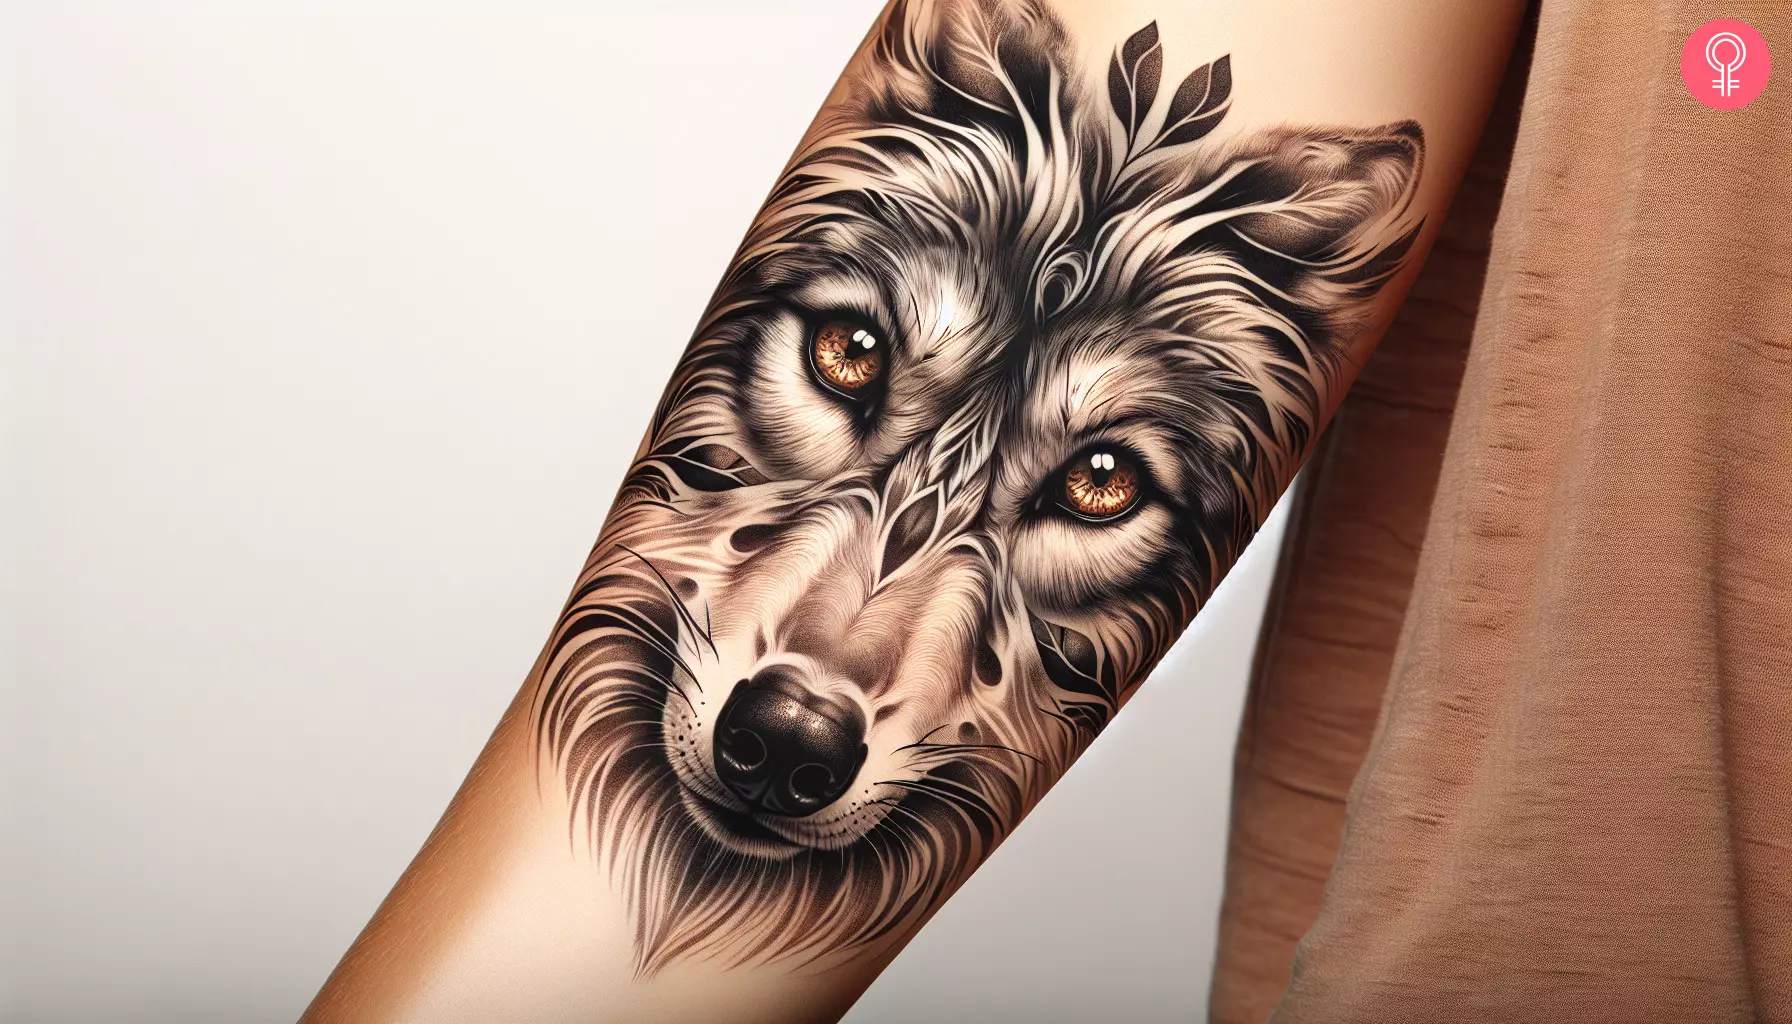 An alpha wolf tattoo on the forearm